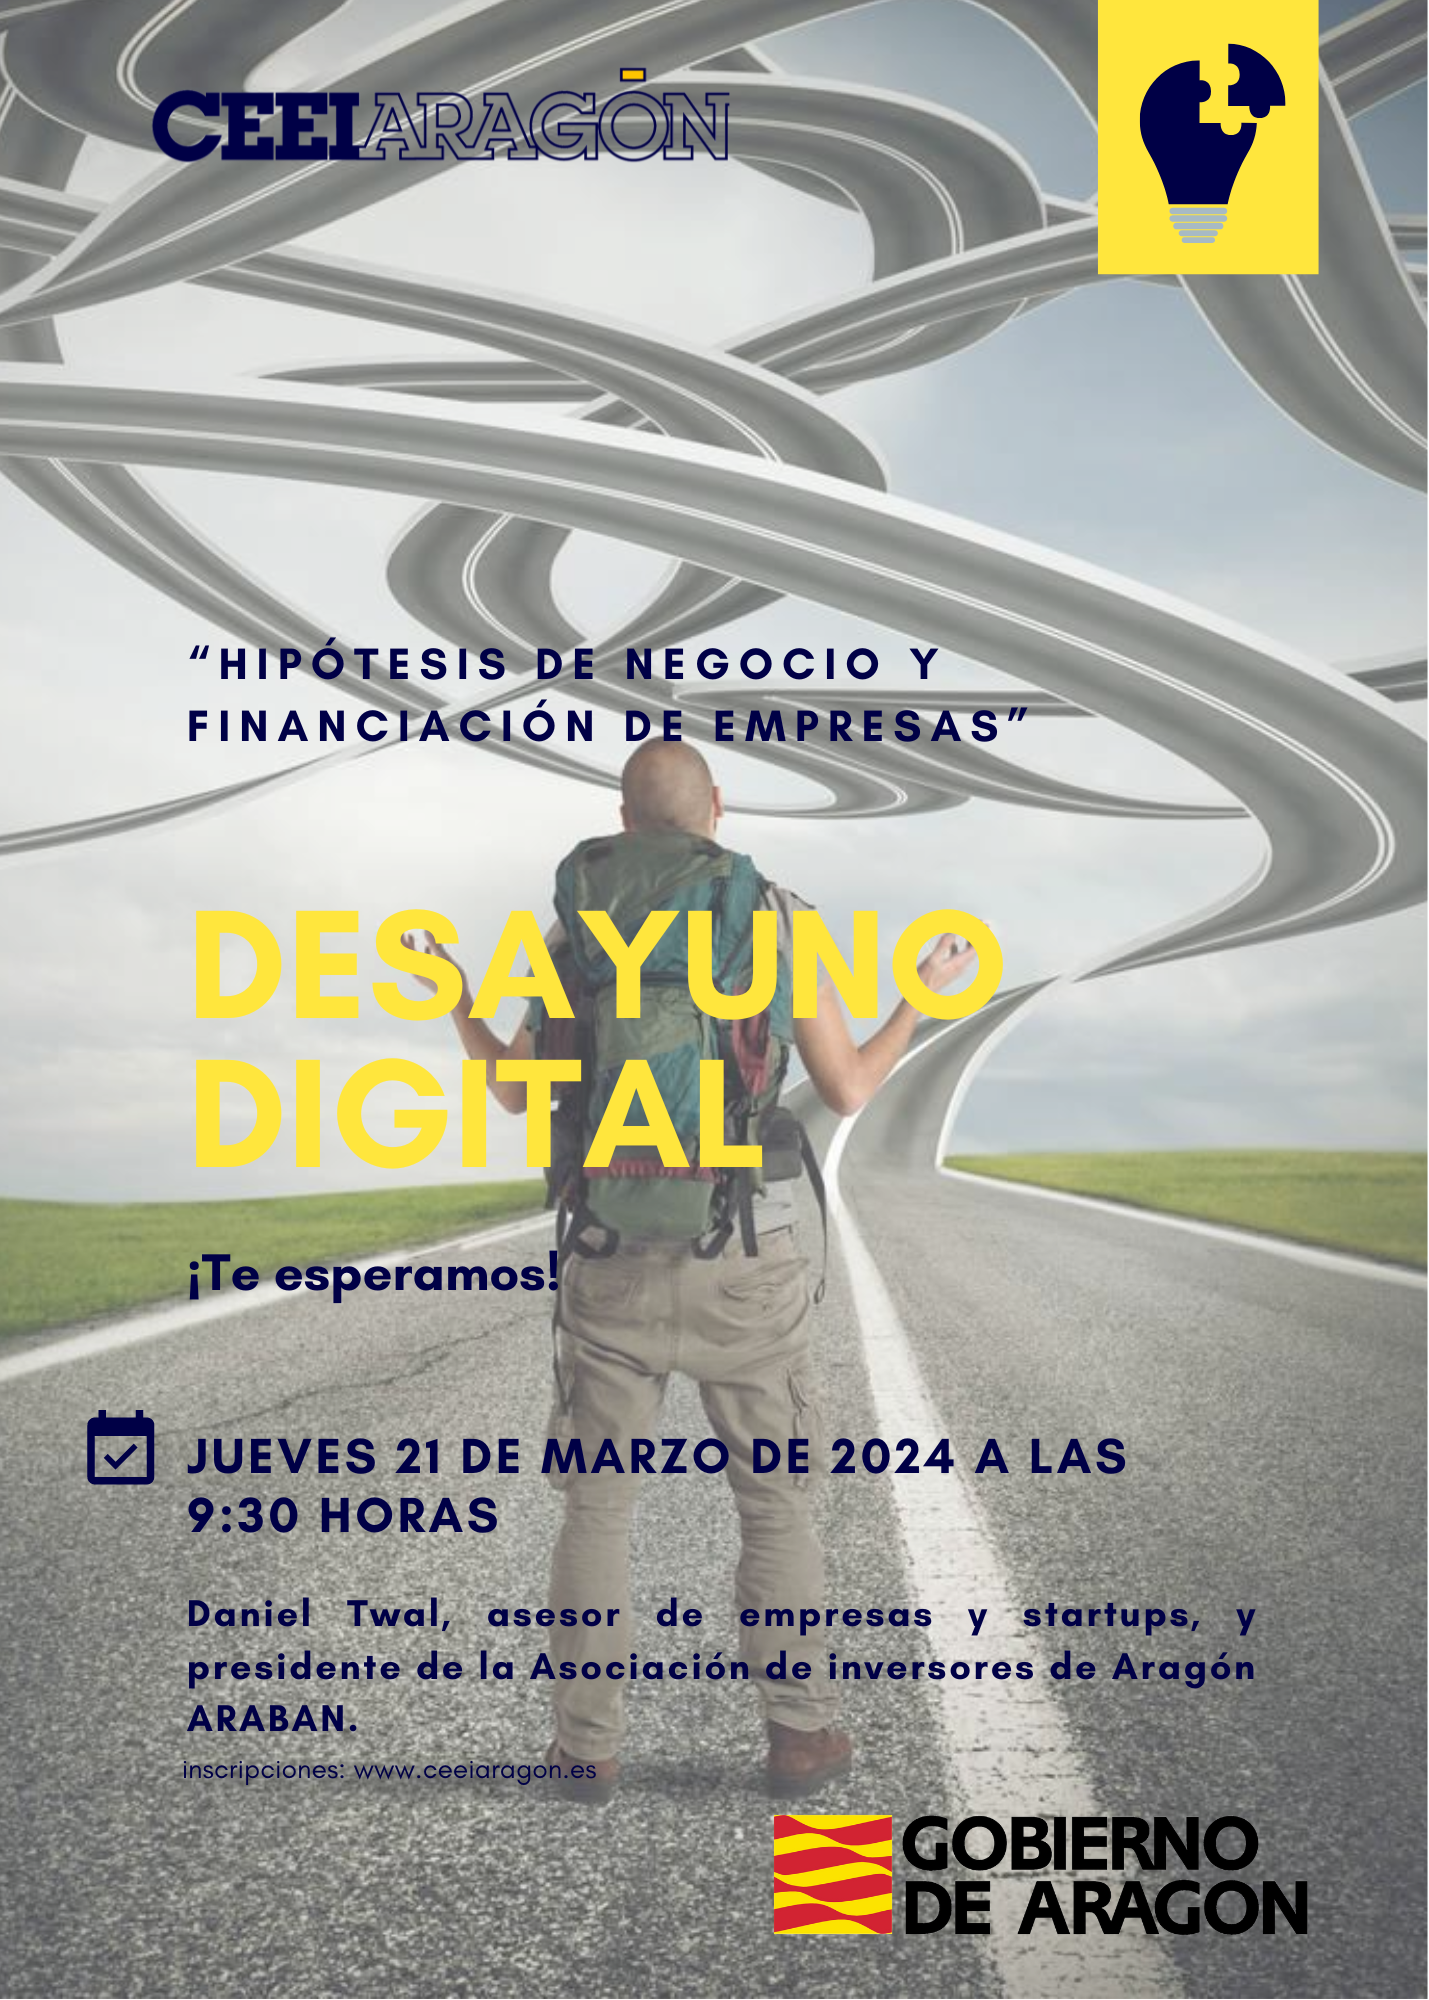 Desayuno digital CEEI "Hipótesis de negocio y financiación de empresas"